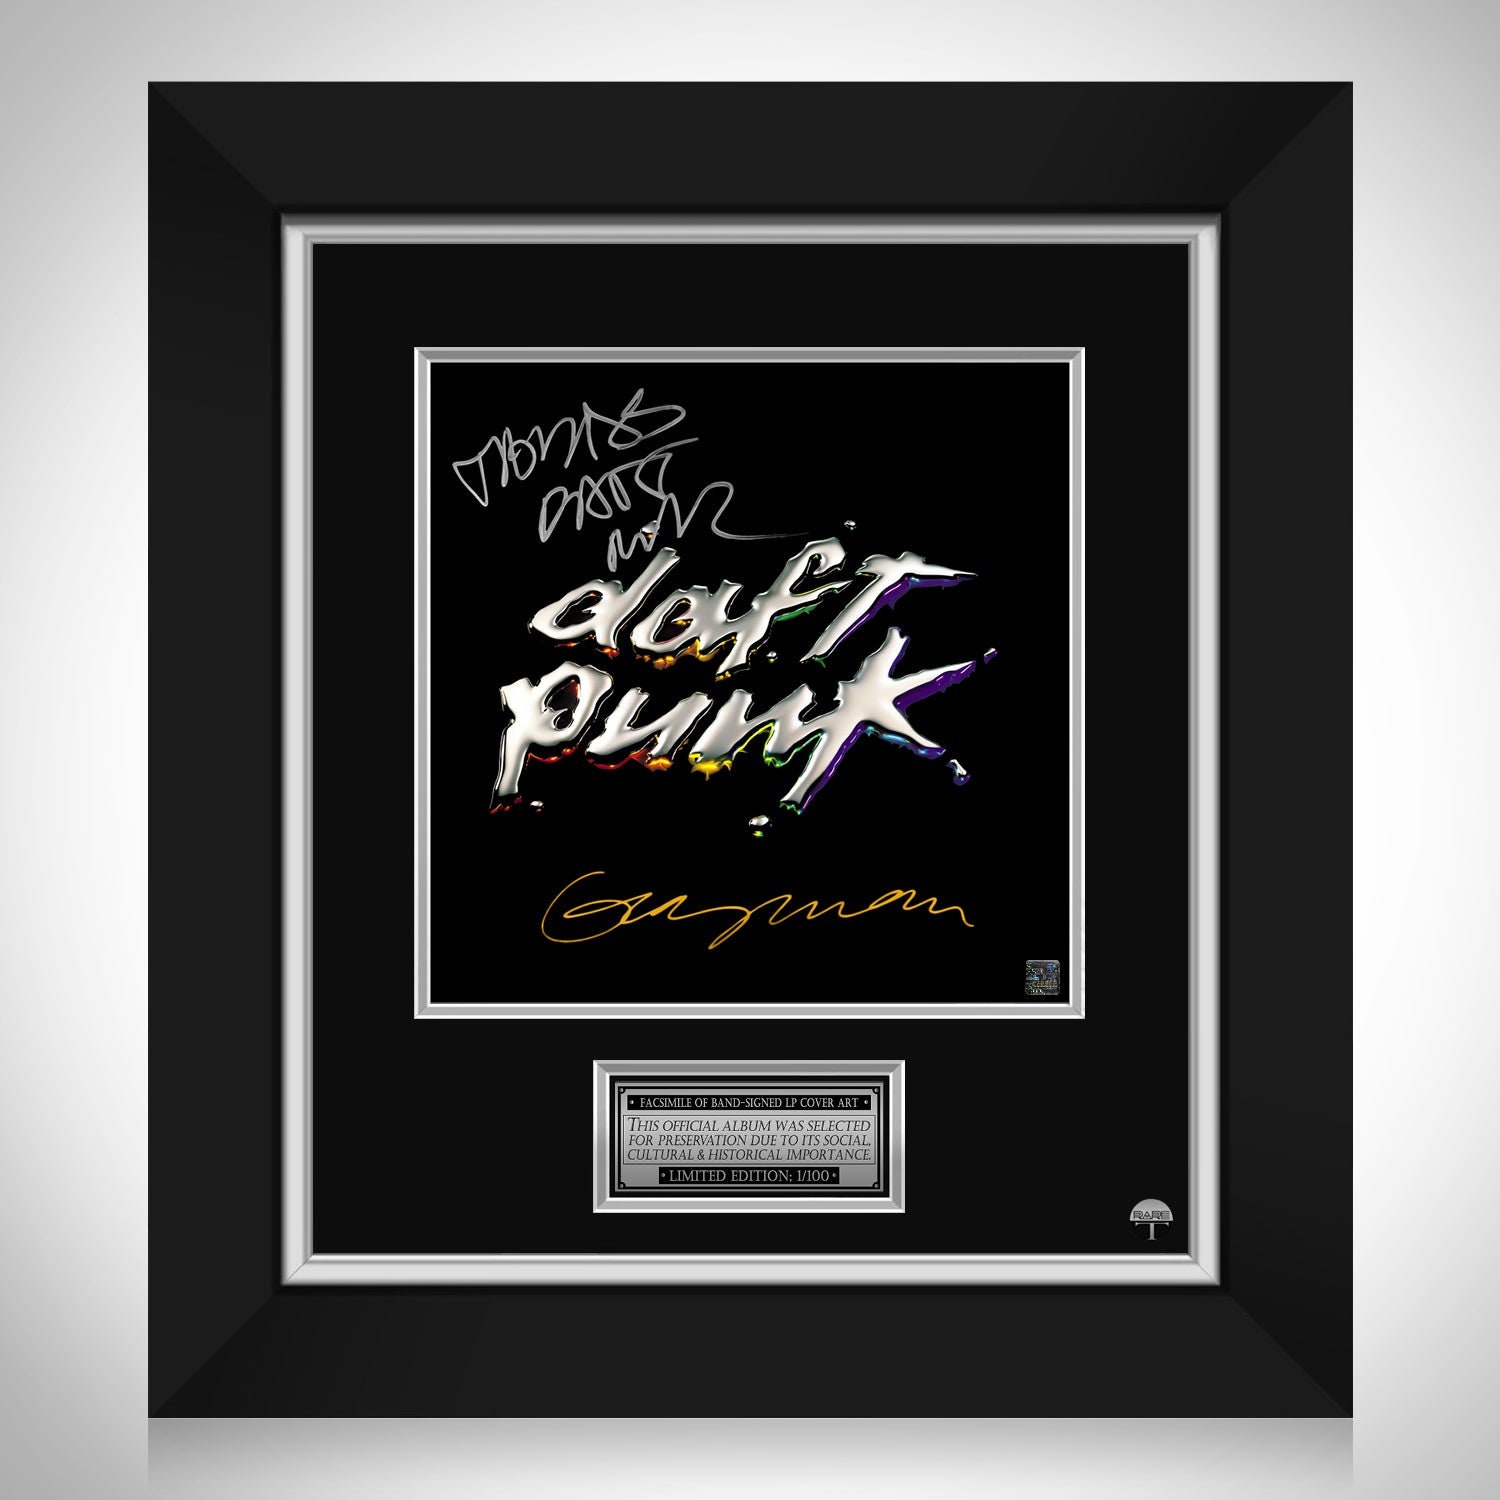 Exhibición de discos de vinilo firmados por Daft Punk